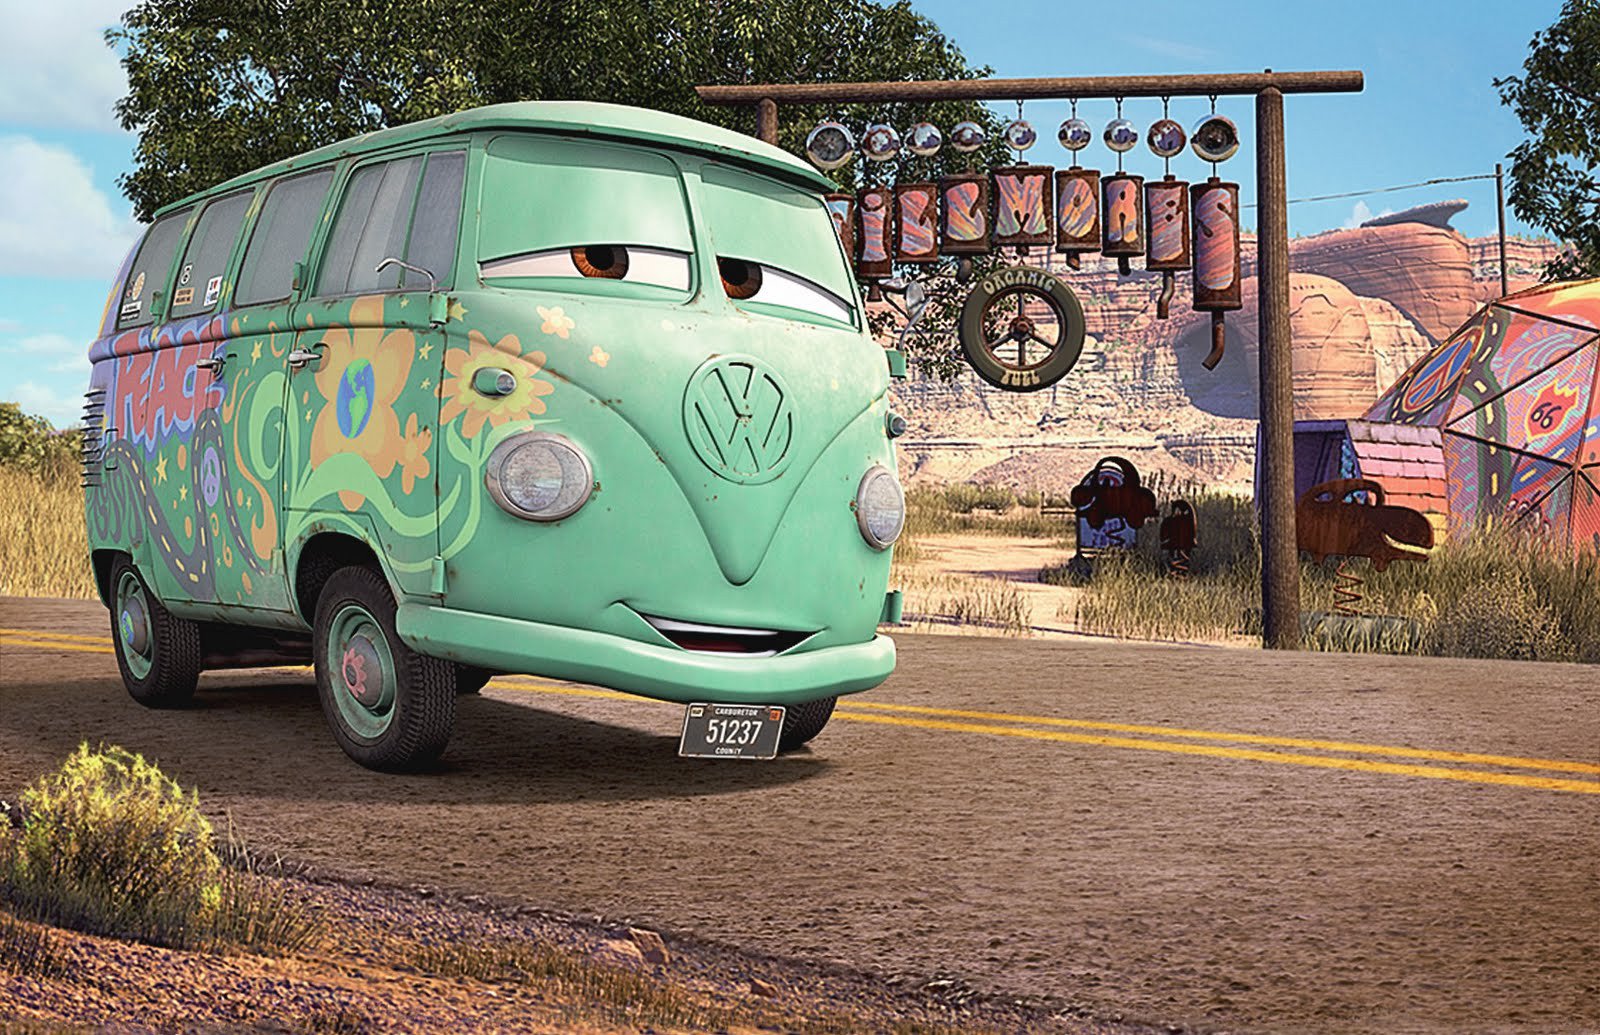 kombi, Type, 2, Old, Bus, Volkswagen, Cars, Disney, Pixar Wallpaper